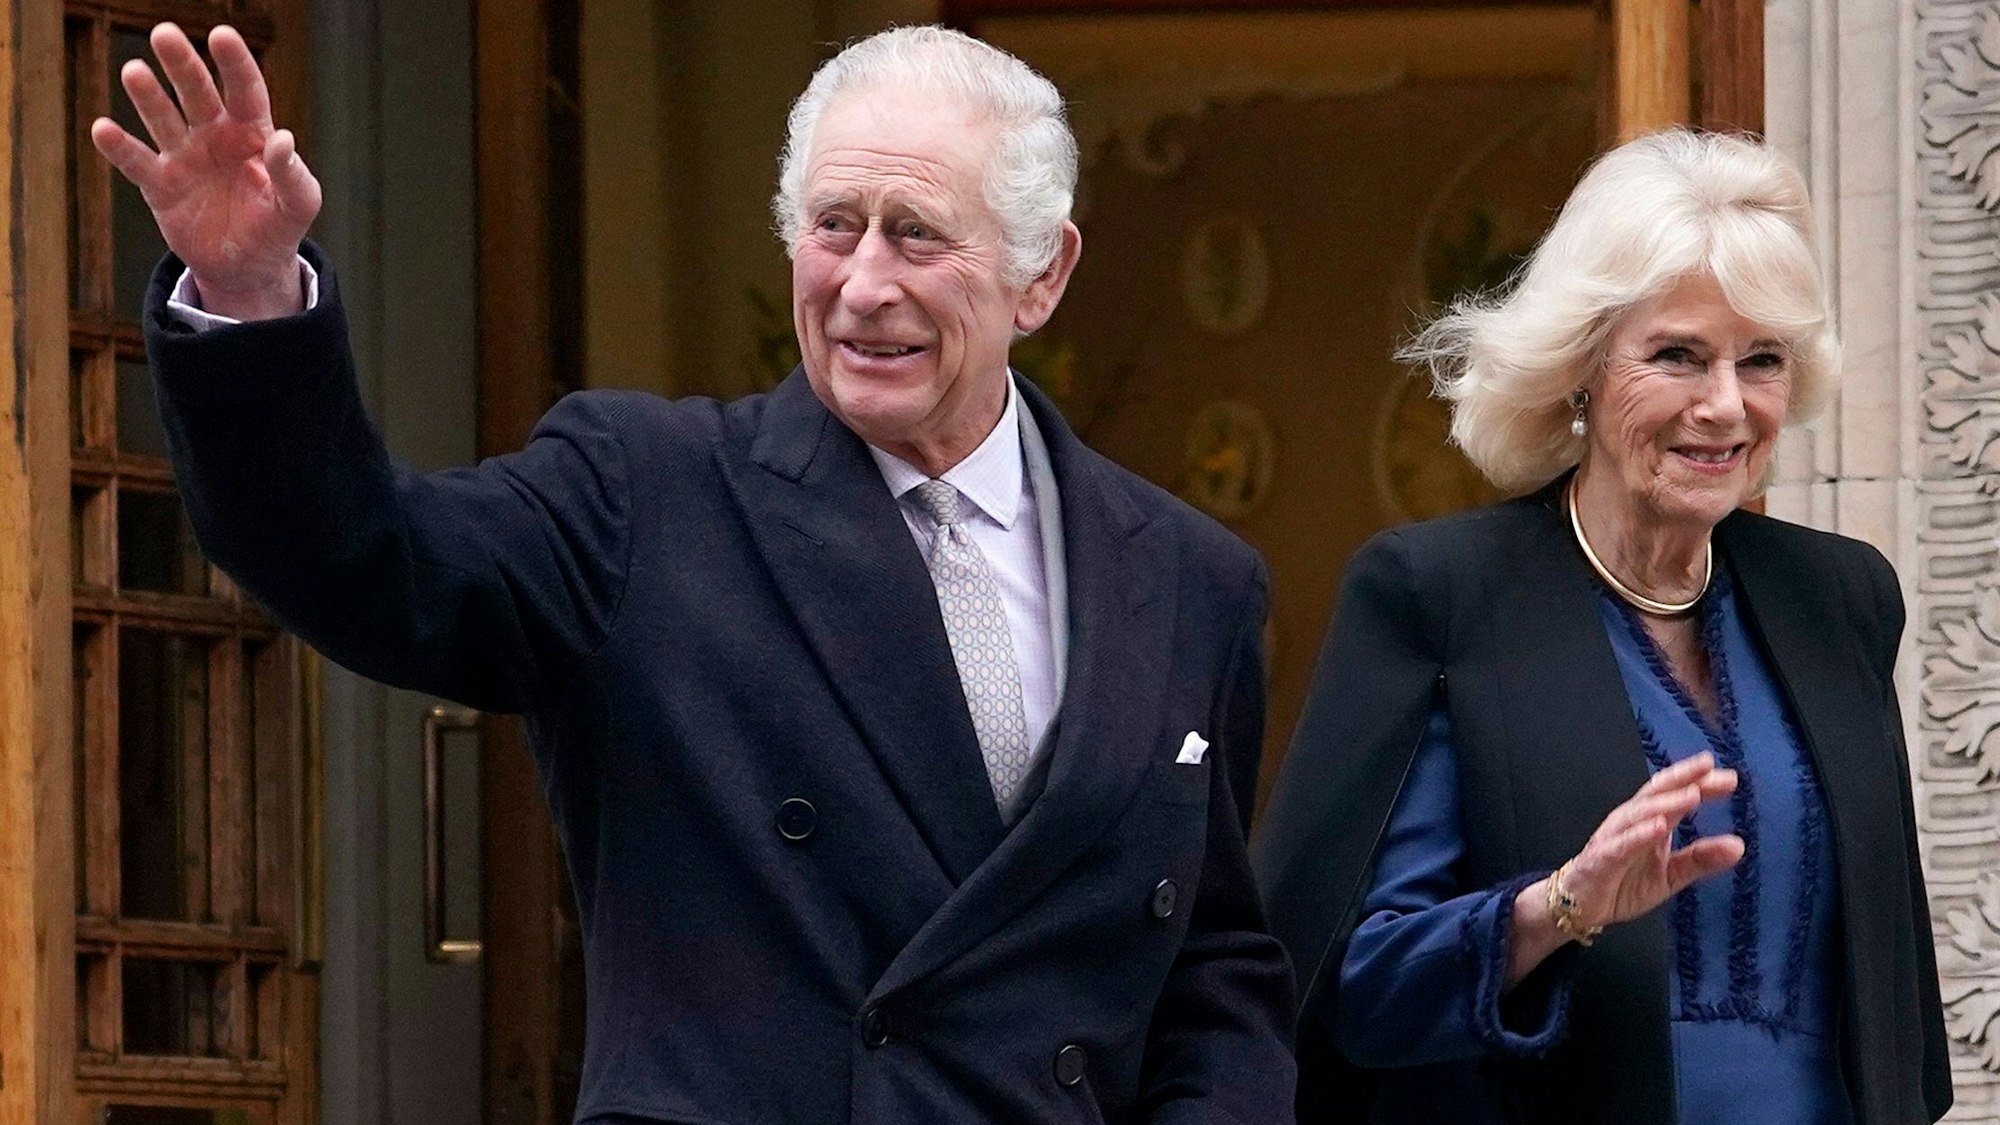 König Charles III. und Königin Camilla verlassen die Londoner Klinik, nachdem der Monarch wegen einer vergrößerten Prostata behandelt wurde.